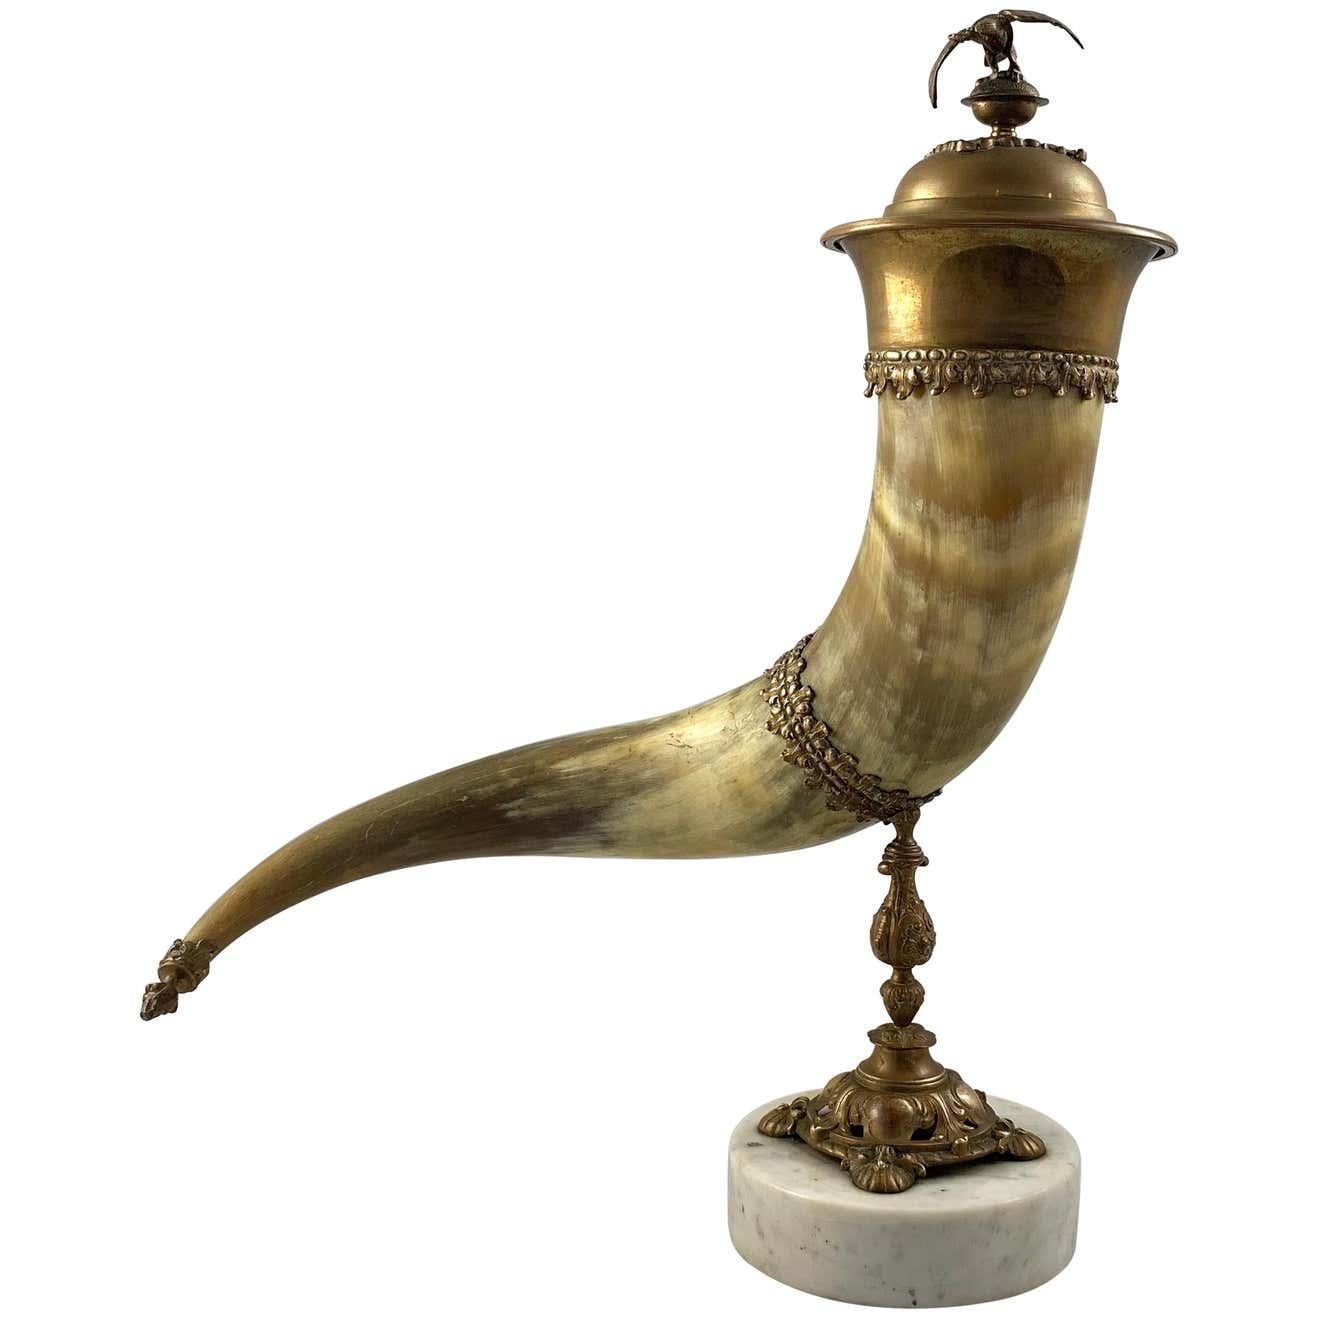 Une corne d'abondance finement montée en corne et laiton doré avec couvercle.

19ème siècle.

Supporté par un pied en fonte sur une base carrée.